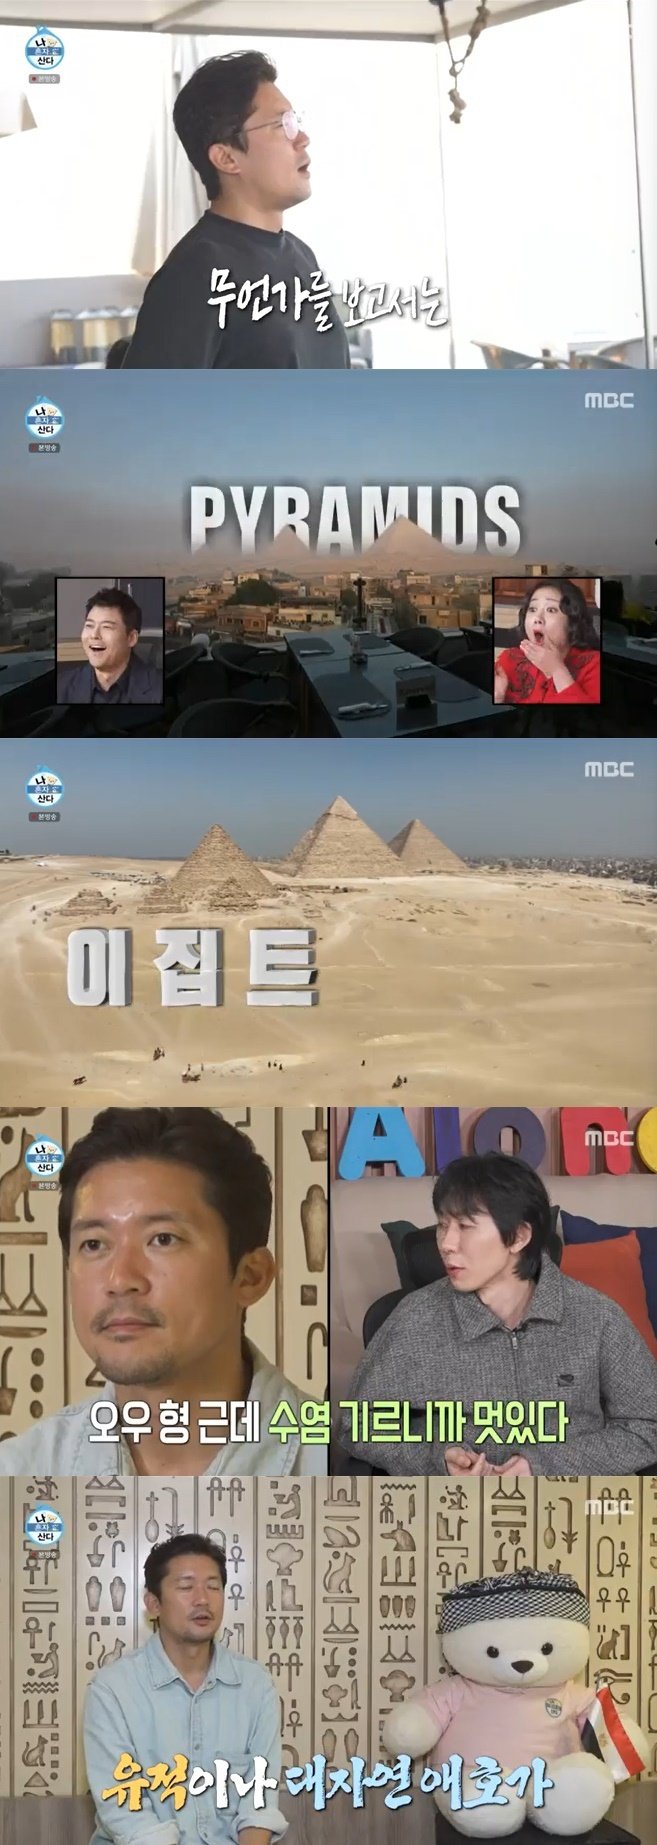 김대호, 10년차 휴가 이집트 갔다…피라미드 실물 영접에 "눈물날 뻔"